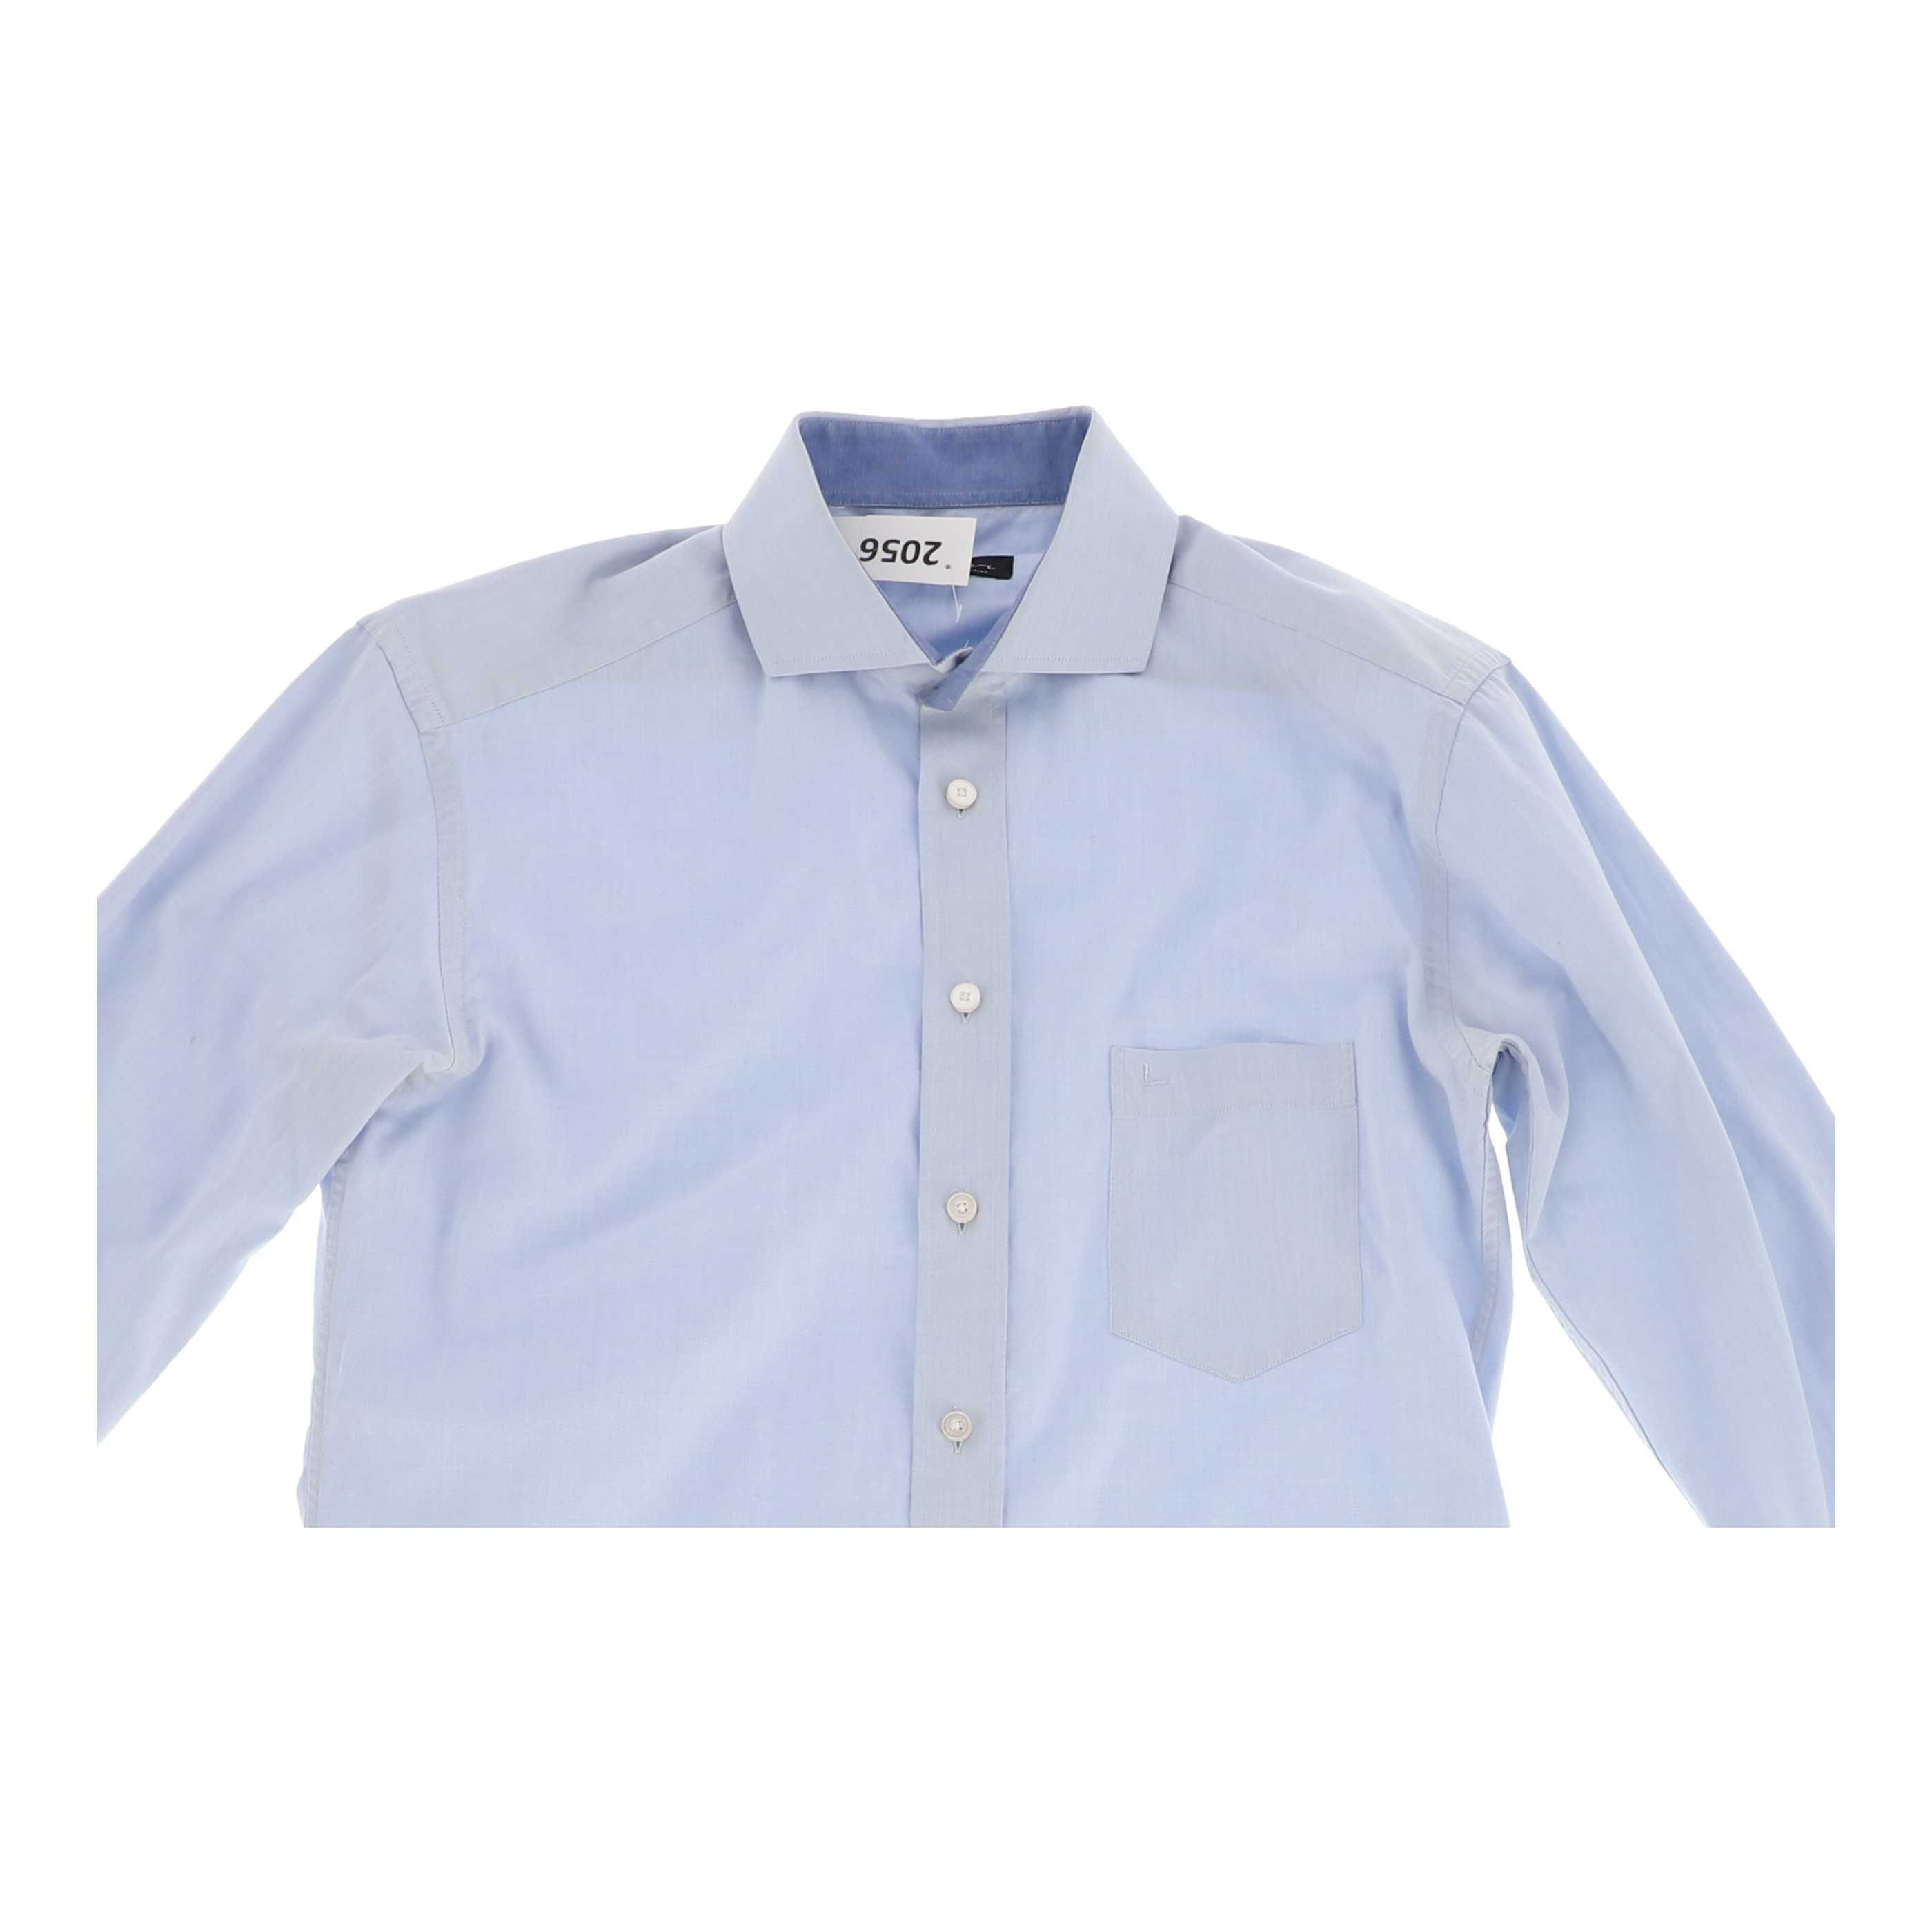 Błękitna koszula marki Vistula, rozmiar 40